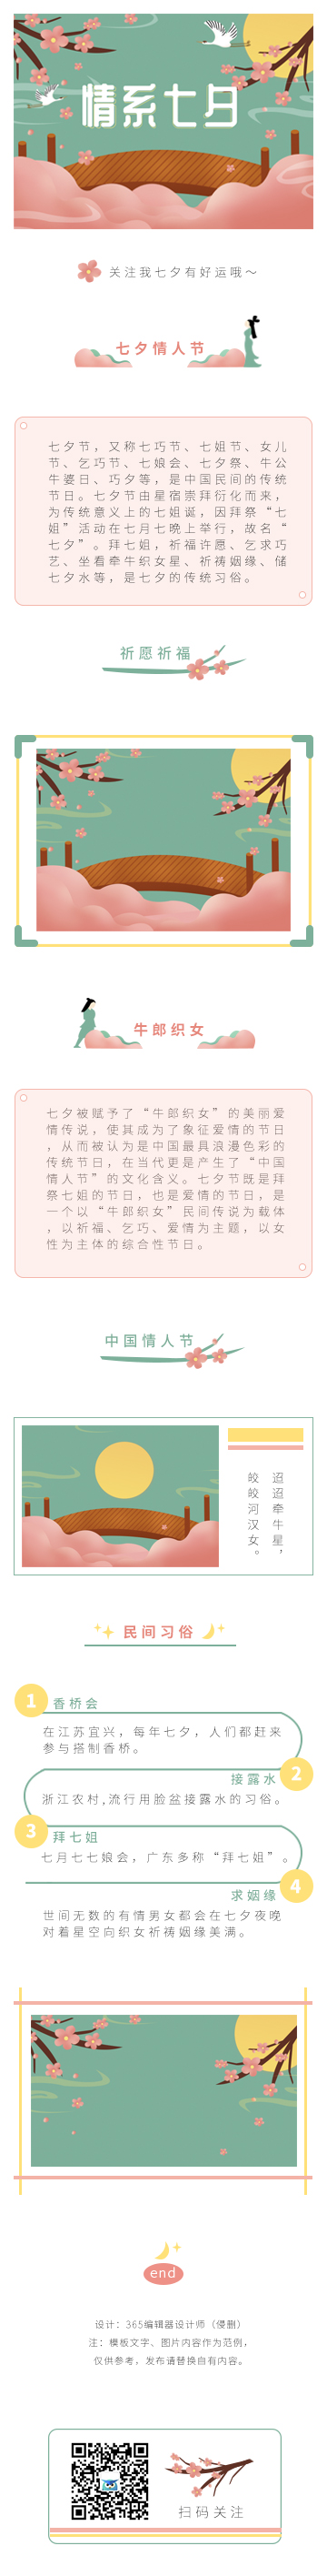 七夕情人节情感鹊桥广告传媒模板